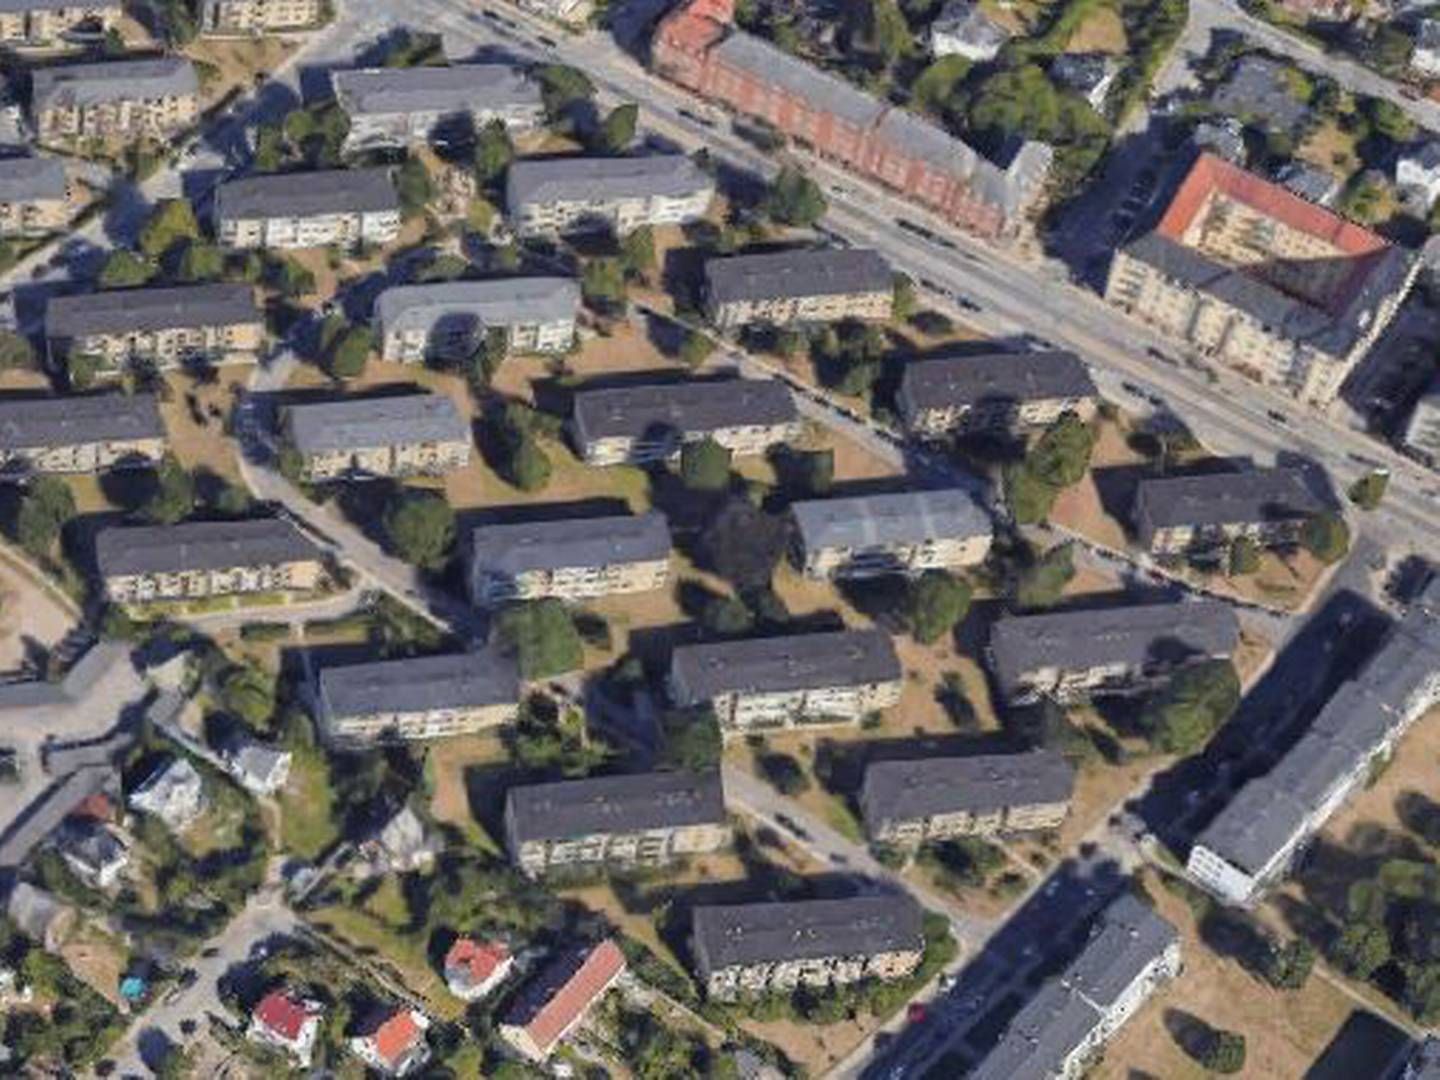 En del af de handlede boliger er placeret her i Blidahpark ved Strandvejen i Hellerup. | Foto: Google Maps